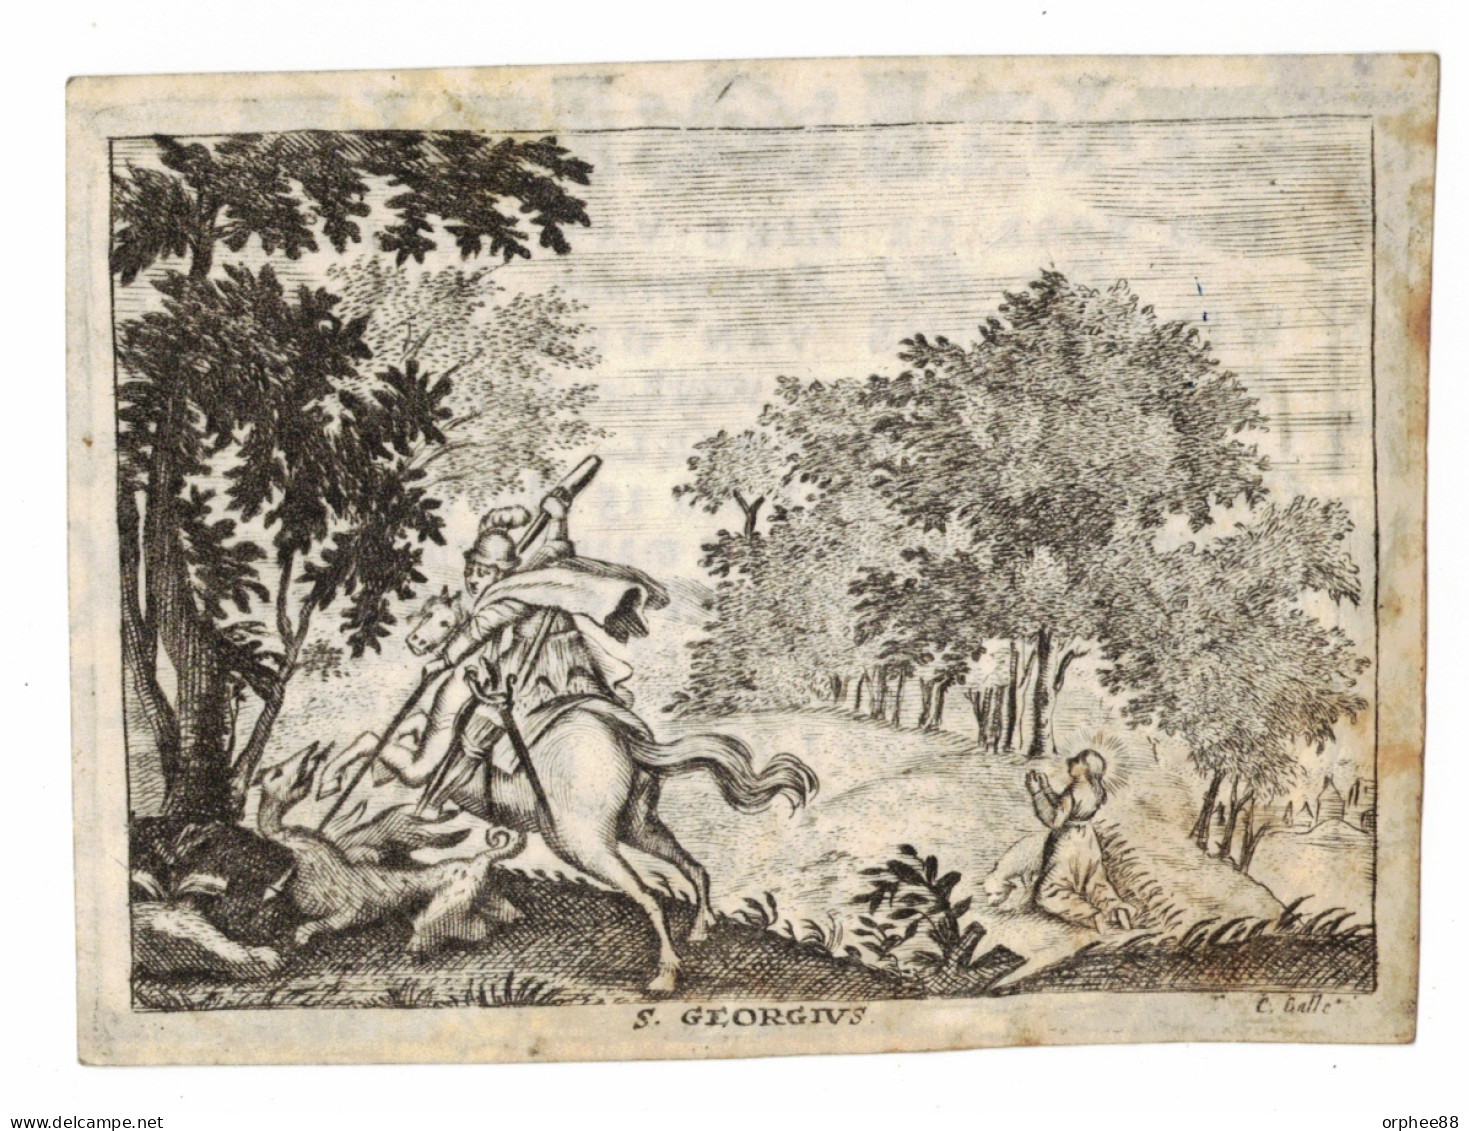 Van Den Heuvel Wilhelmus Priester Pastoor Woensel 1774-1817 Gravure Anversoise Perkament Parchemin - Décès